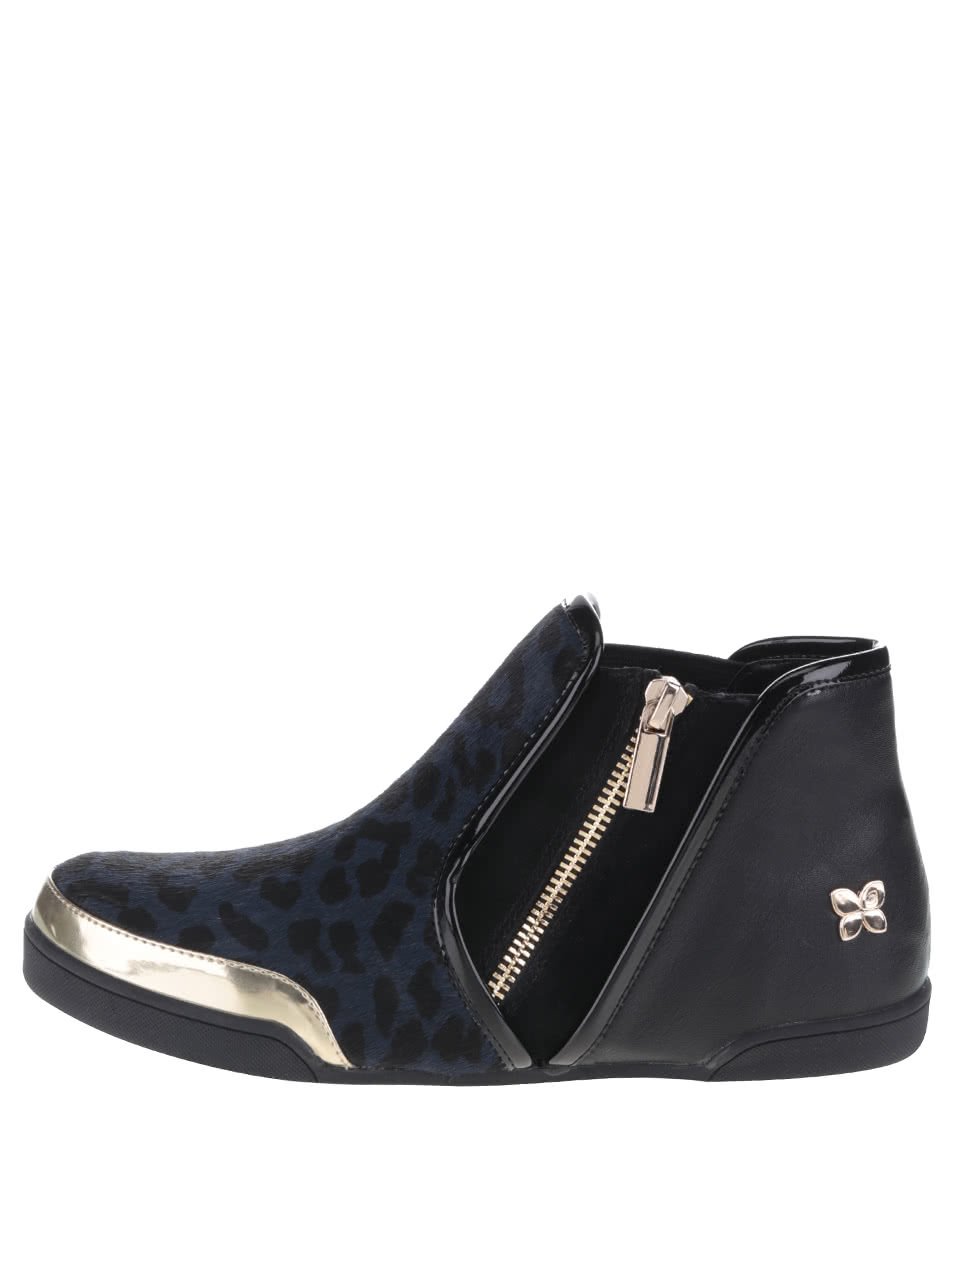 Černo-modré kotníkové boty s leopardím vzorem Butterfly Twists Alexis